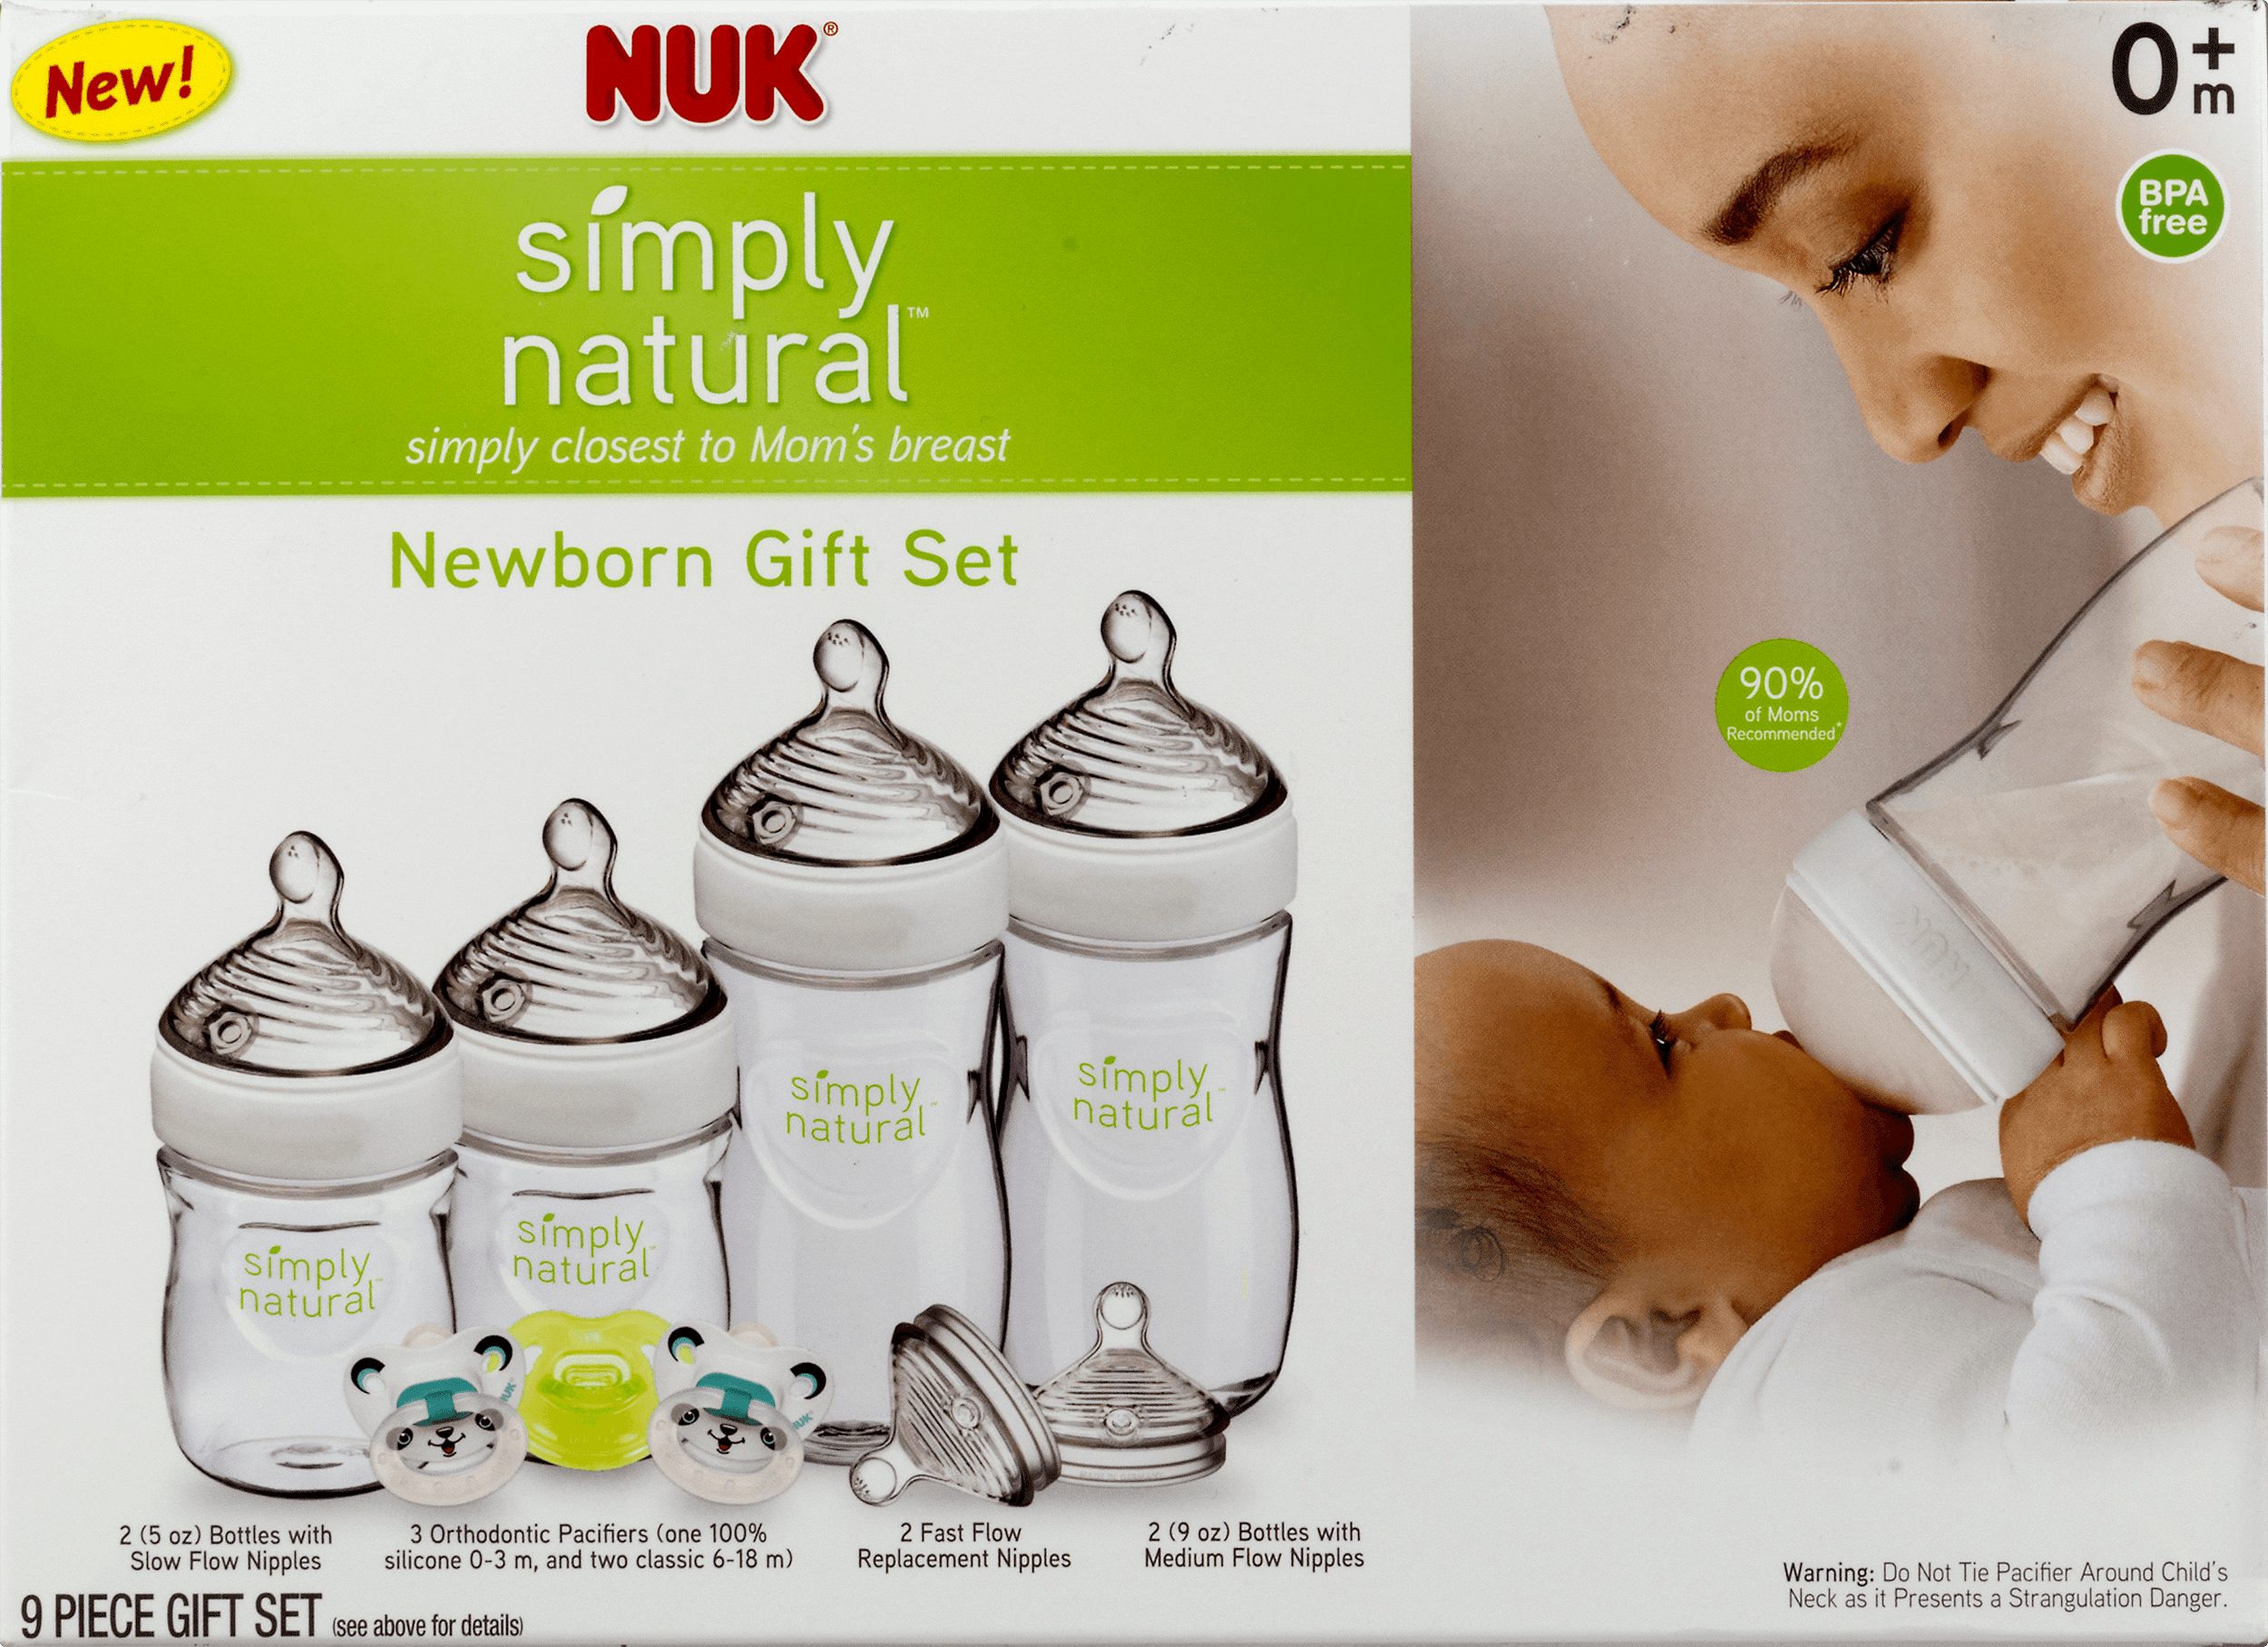 nuk simply natural newborn gift set